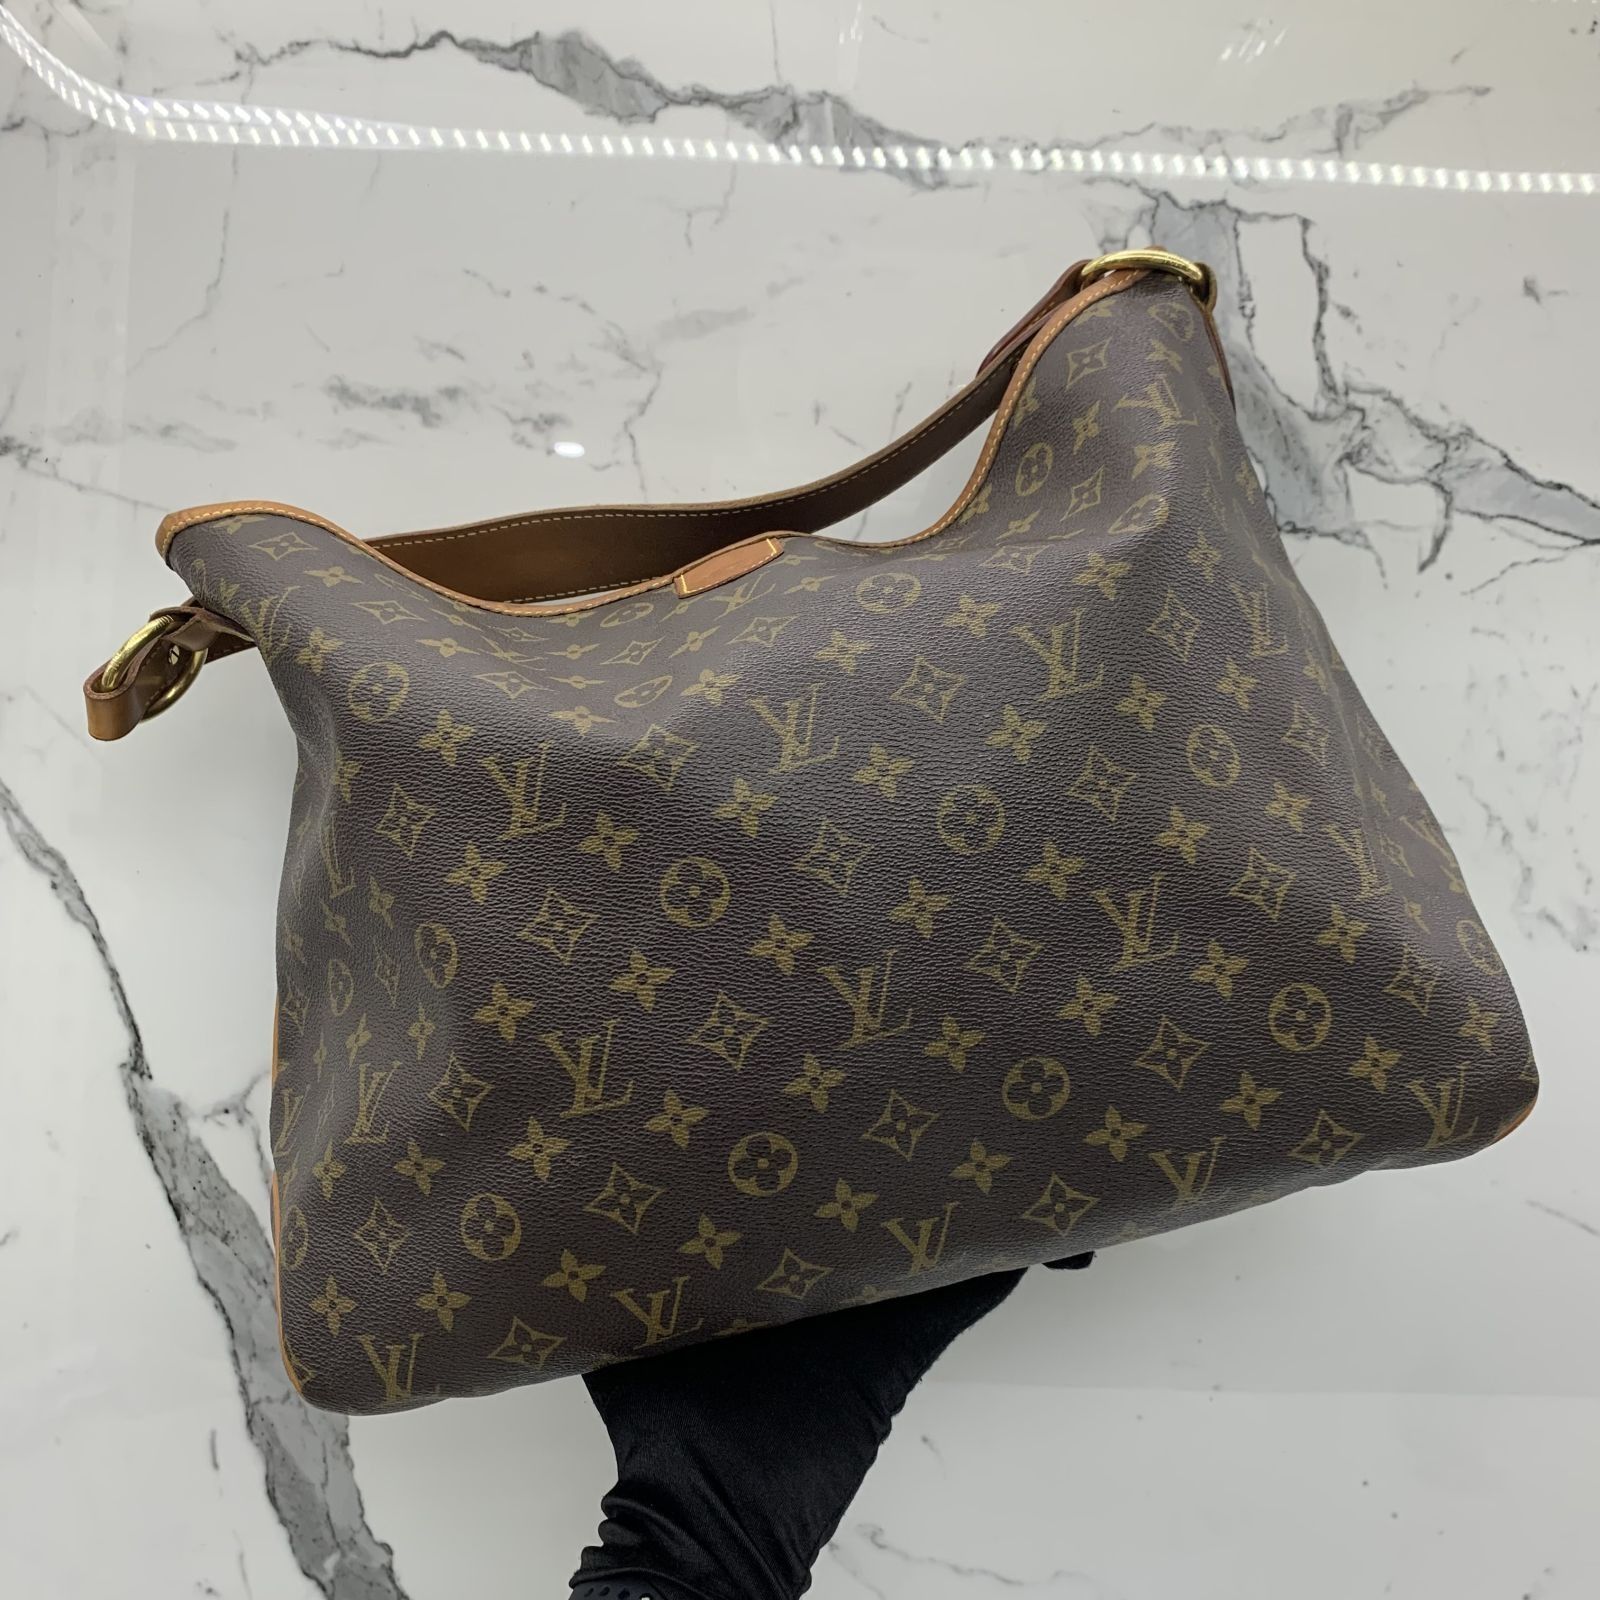 Louis Vuitton Delightful Shoulder Bags